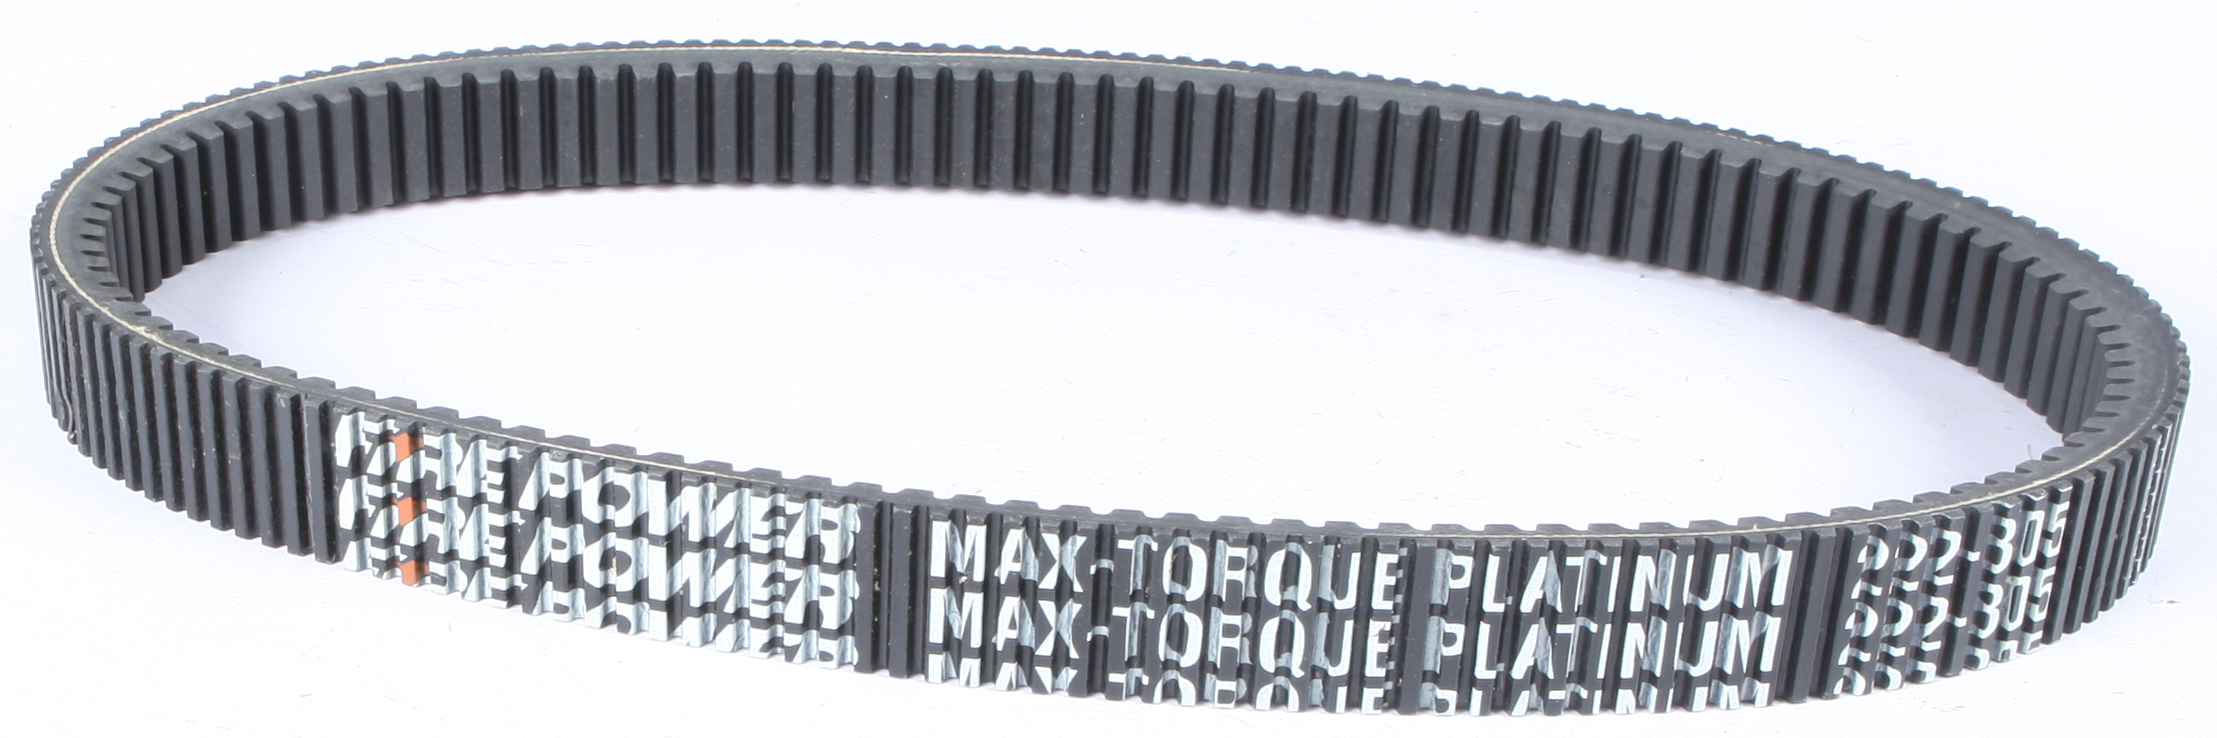 Sp1 - Max-torque Platinum Belt 44 13/16" X 1 13/32" - 47-3277